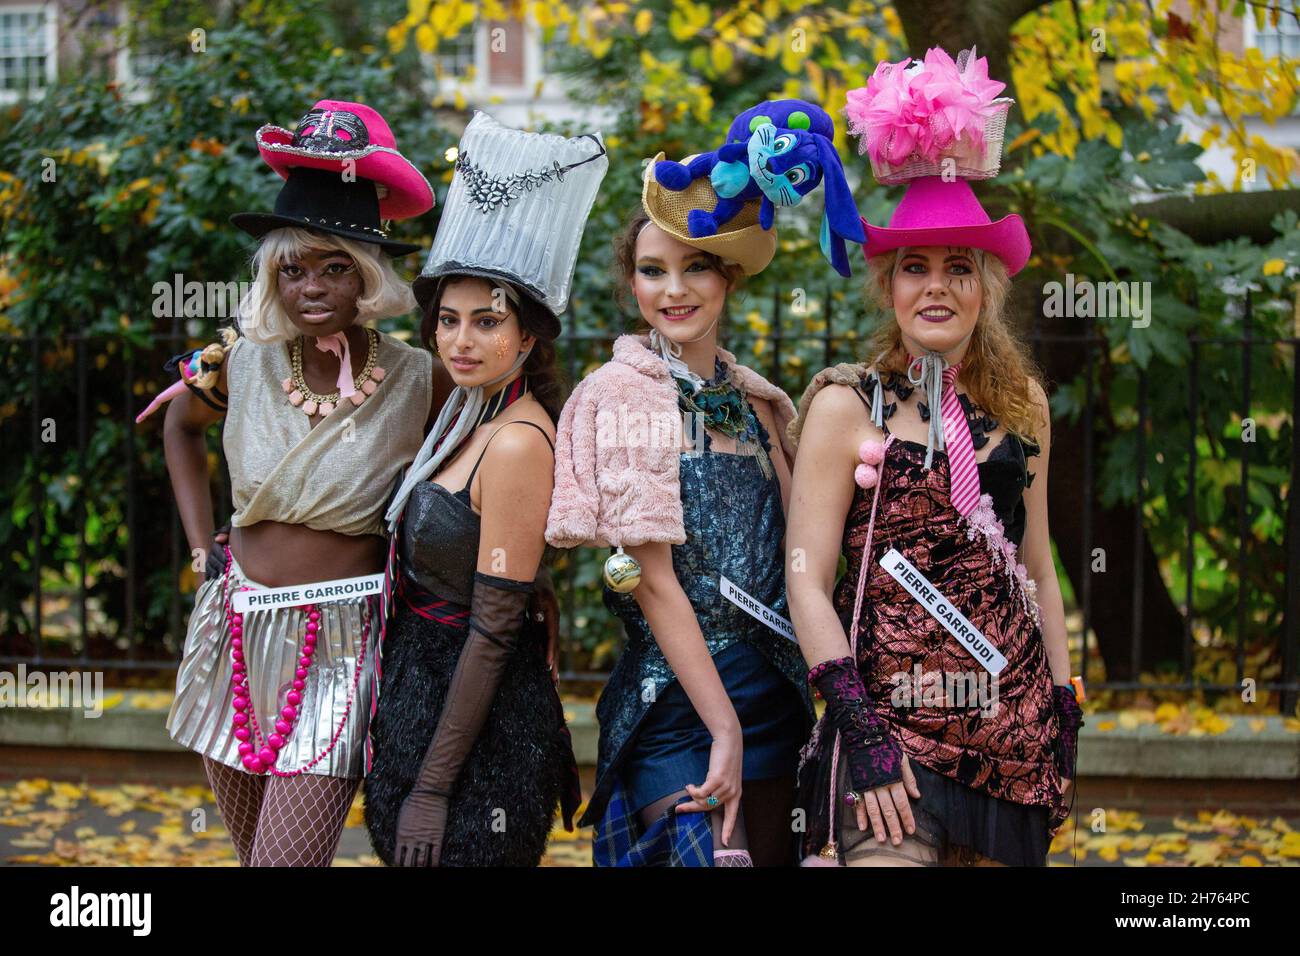 I modelli presentano l'ultima collezione colorata di Pierre Garroudi in una delle speciali sfilate di moda flash mob del designer a Knightsbridge. (Foto di Pietro Recchia / SOPA Images/Sipa USA) Foto Stock